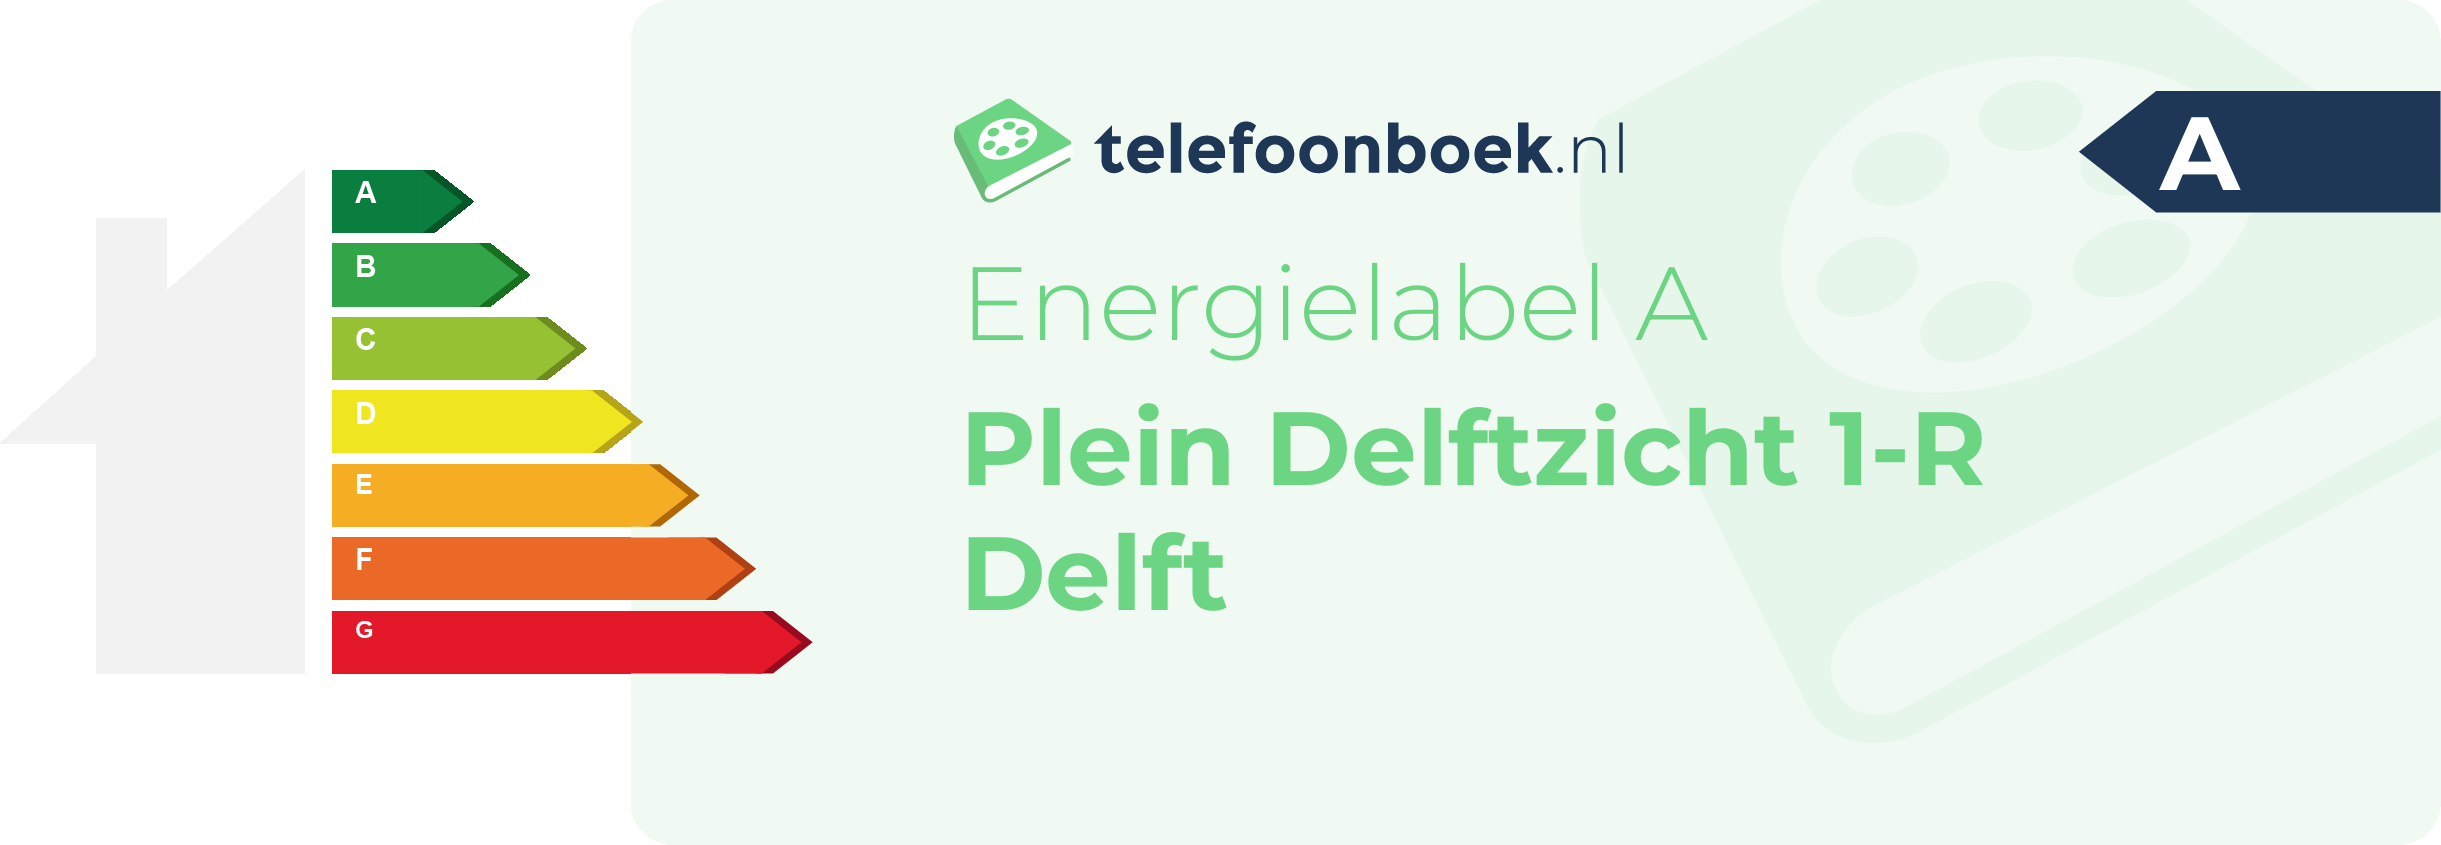 Energielabel Plein Delftzicht 1-R Delft